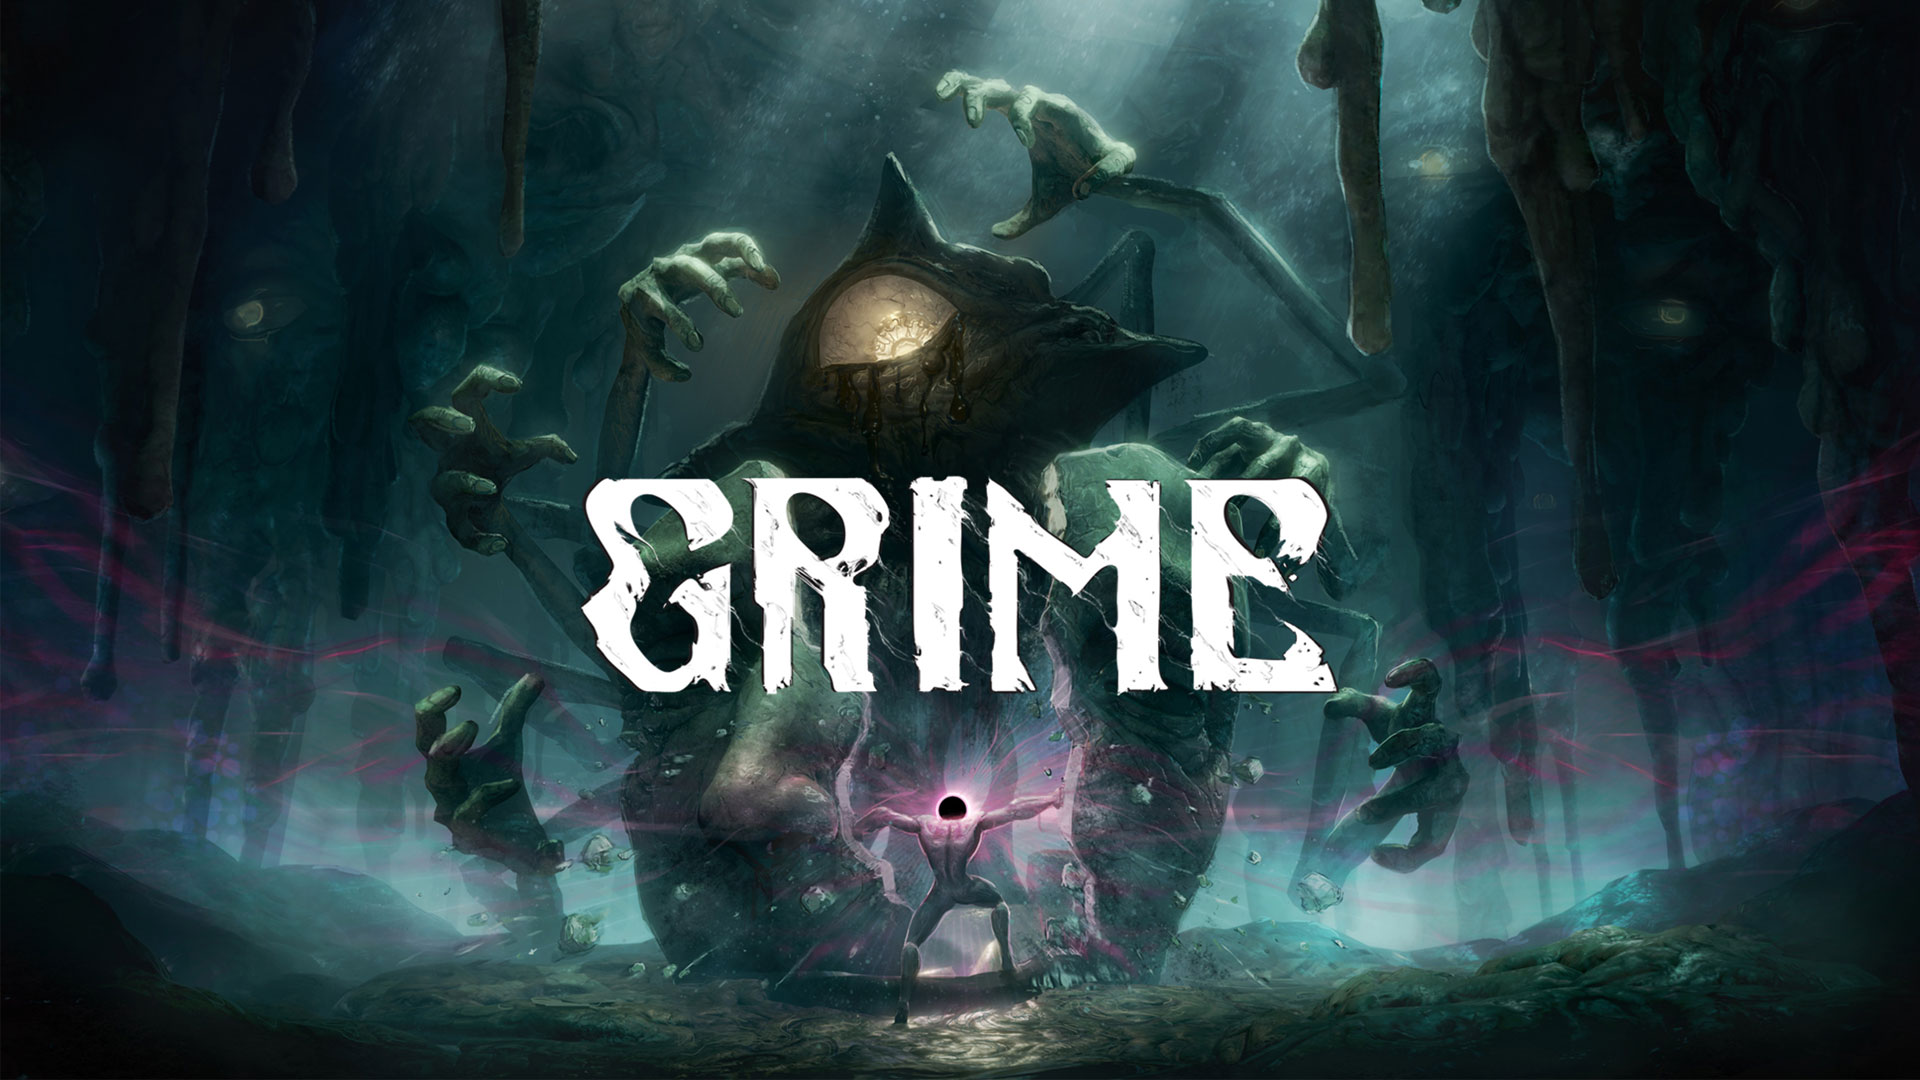 بررسی بازی Grime